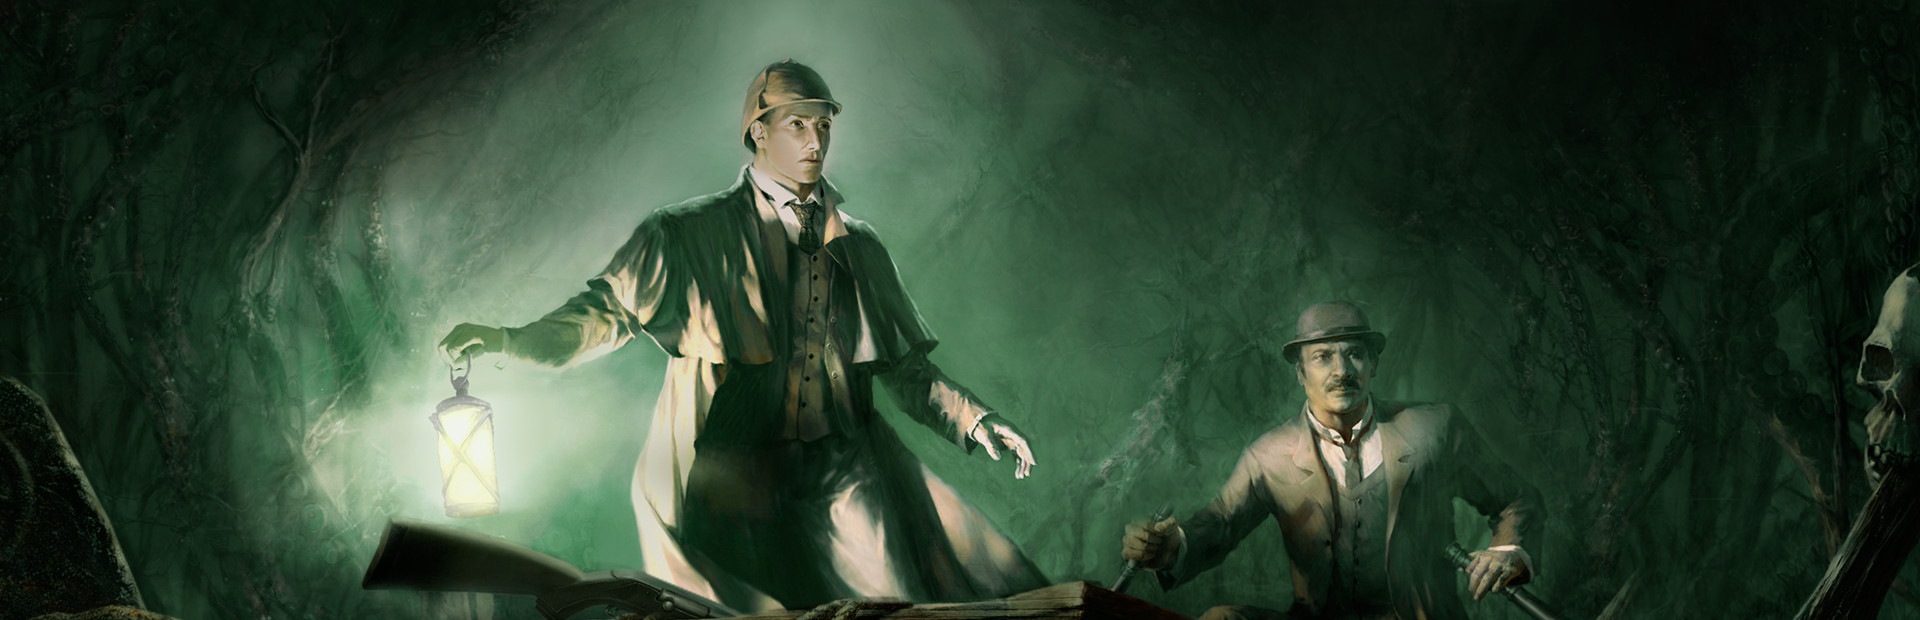 Sherlock Holmes: The Awakened (2008) cover image